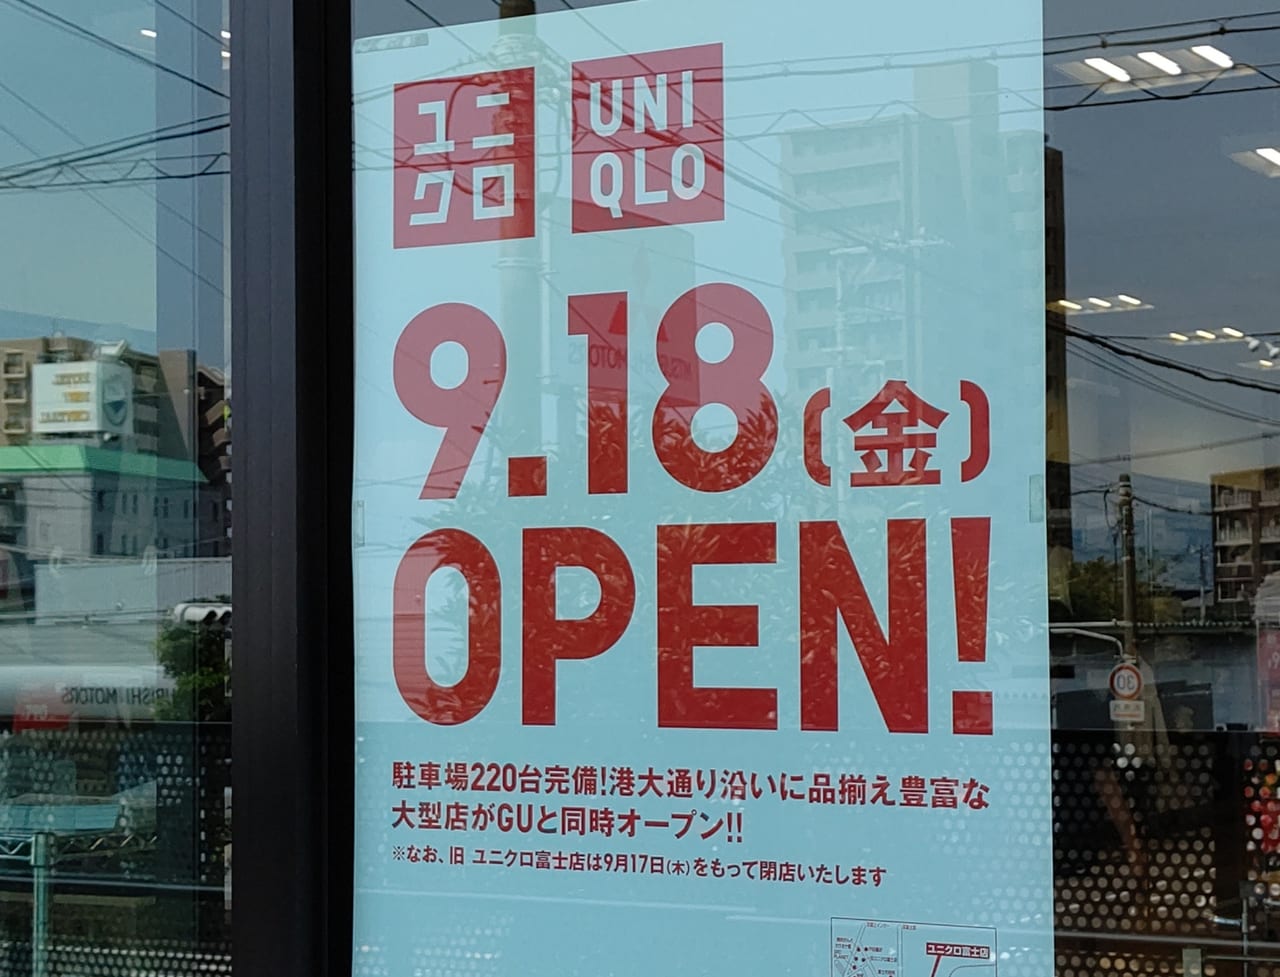 富士市 Uniqlo Guの大型店が9月18日 金 グランドオープンします 大抽選会があります 号外net 富士市 富士宮市